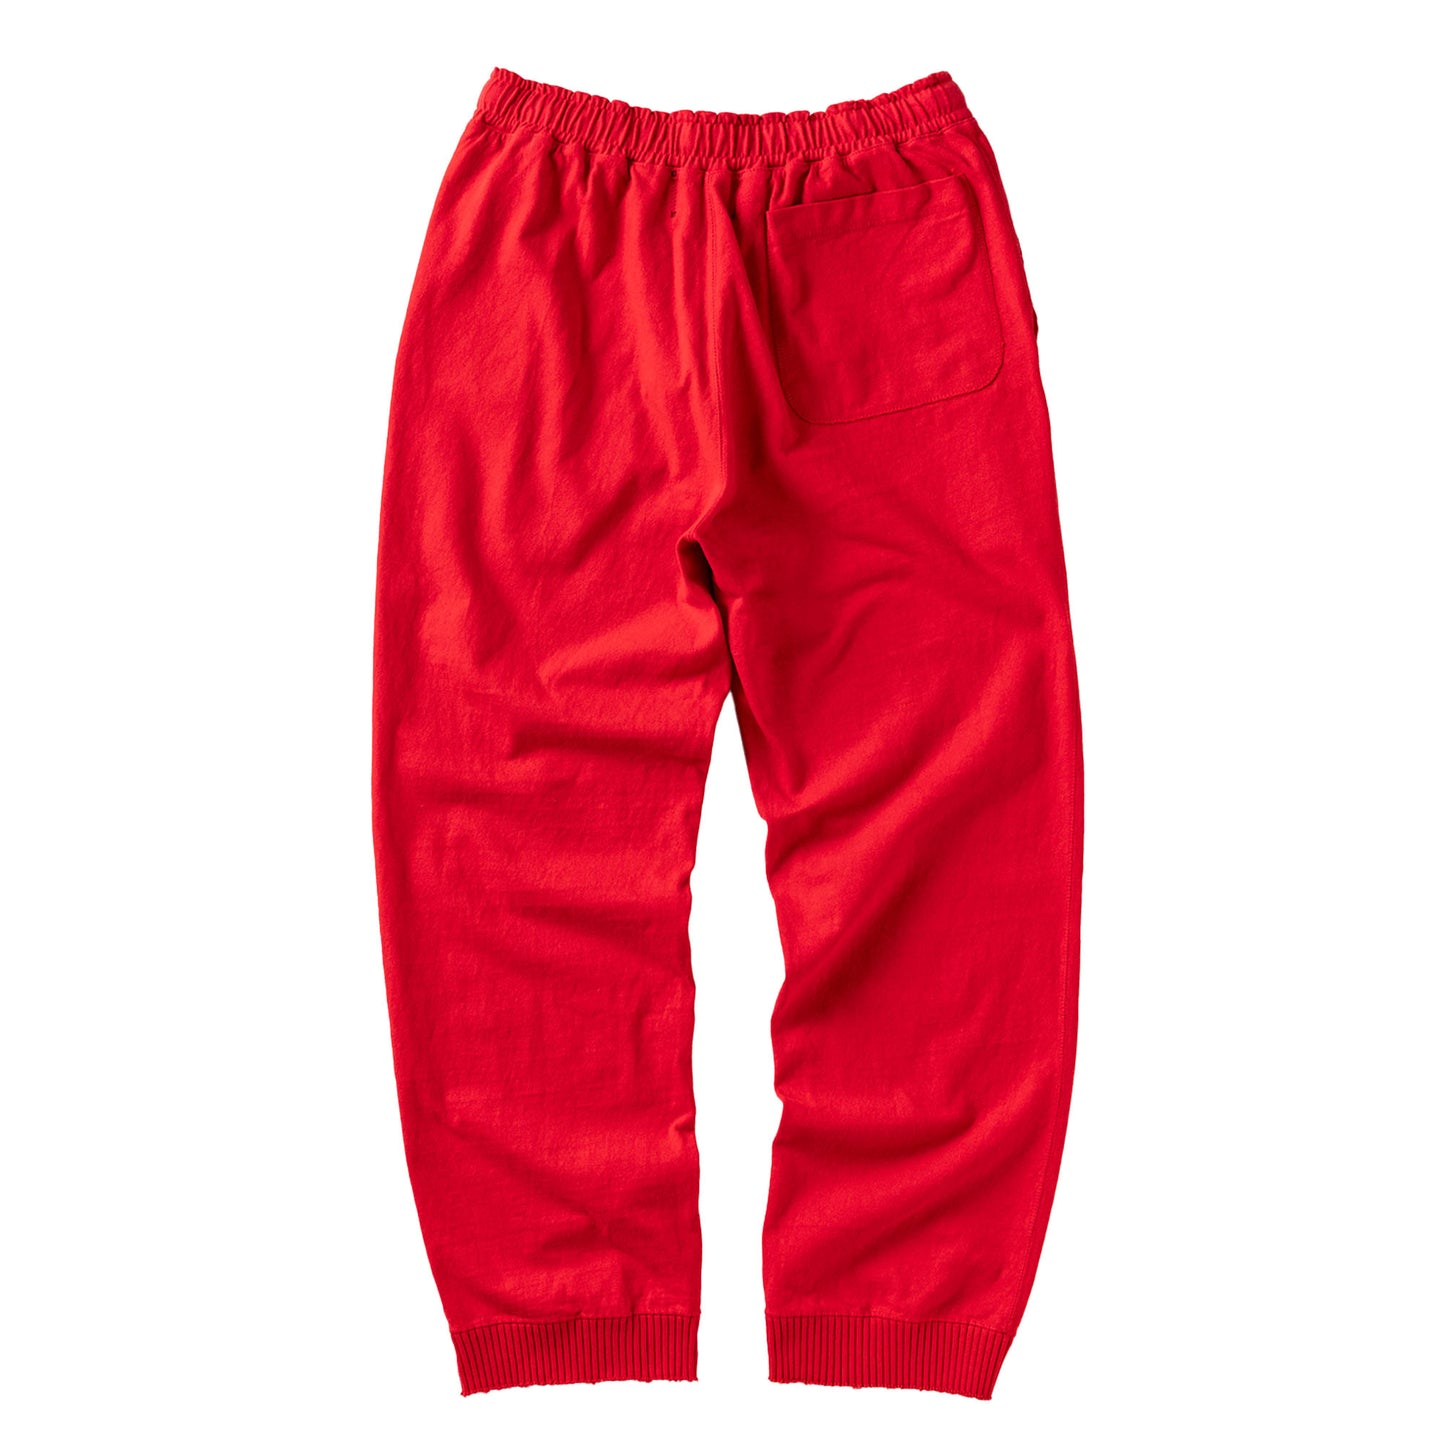 Light Straight Wide Pants /Red(ライト ストレート ワイドパンツ/レッド)